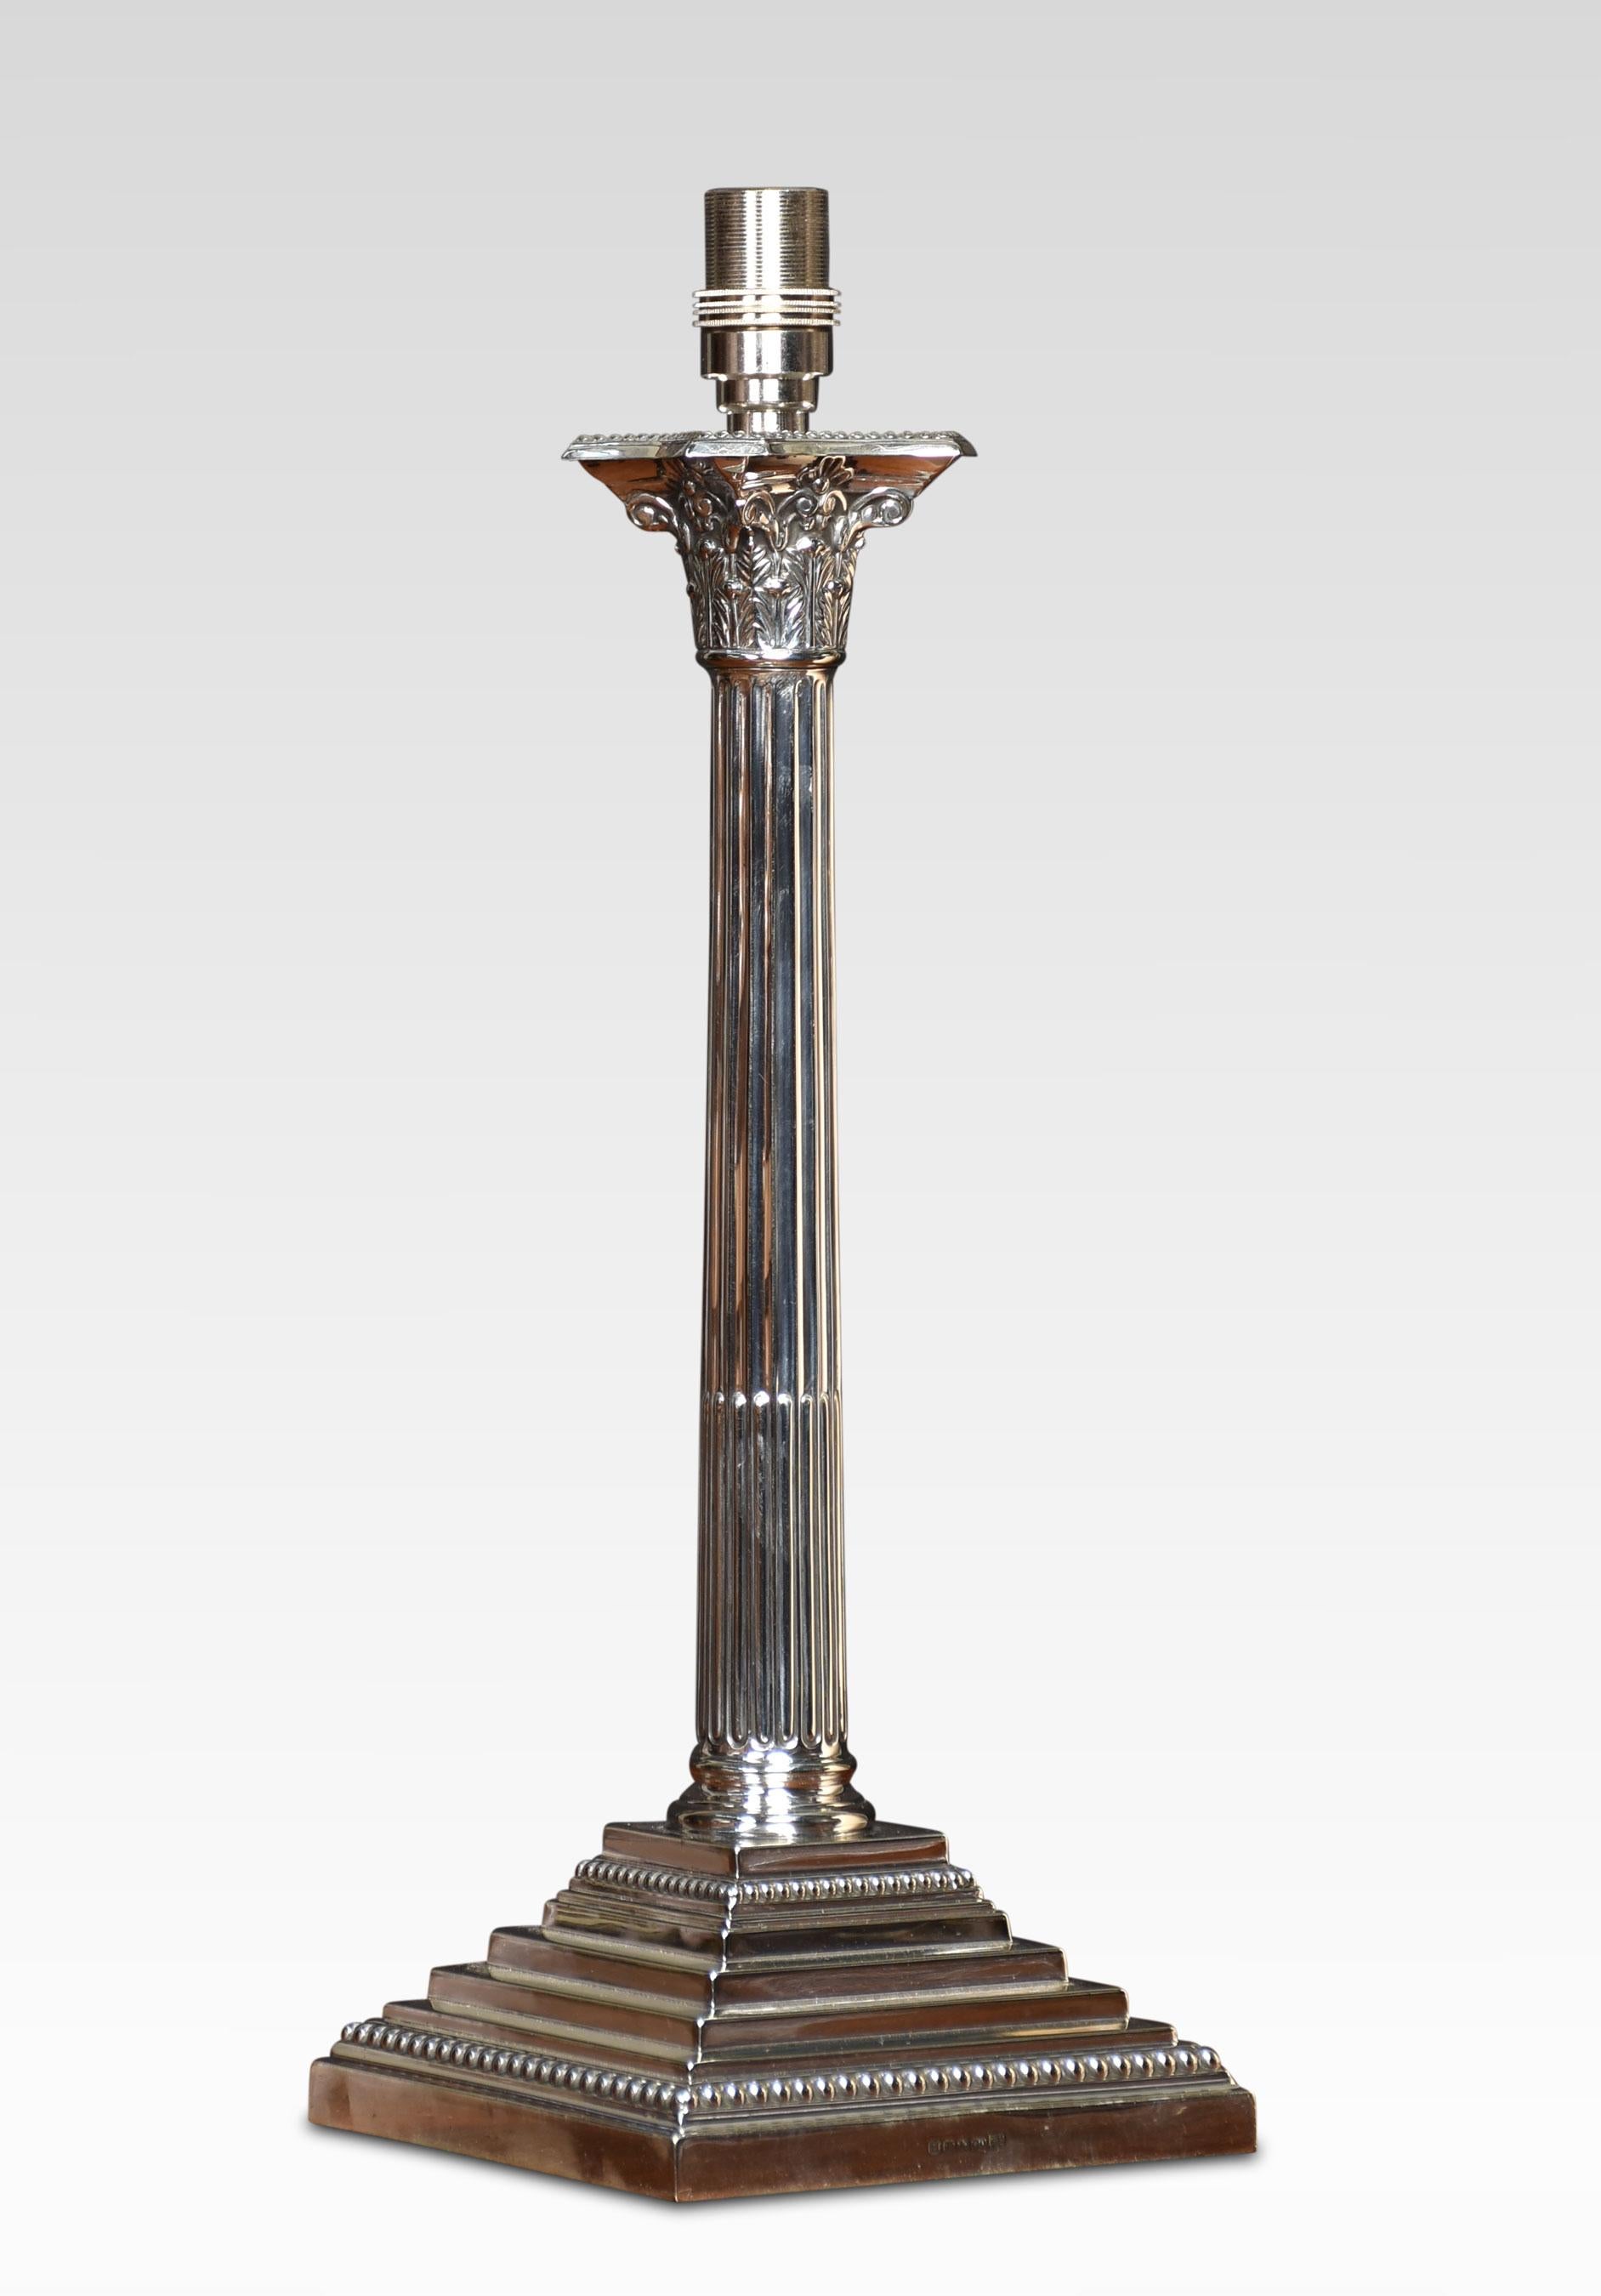 Lampe de table en métal argenté, avec une colonne corinthienne sur une base carrée. La lampe a été recâblée.
Dimensions
Hauteur 16.5 pouces
Largeur 6 pouces
Profondeur 6 pouces.